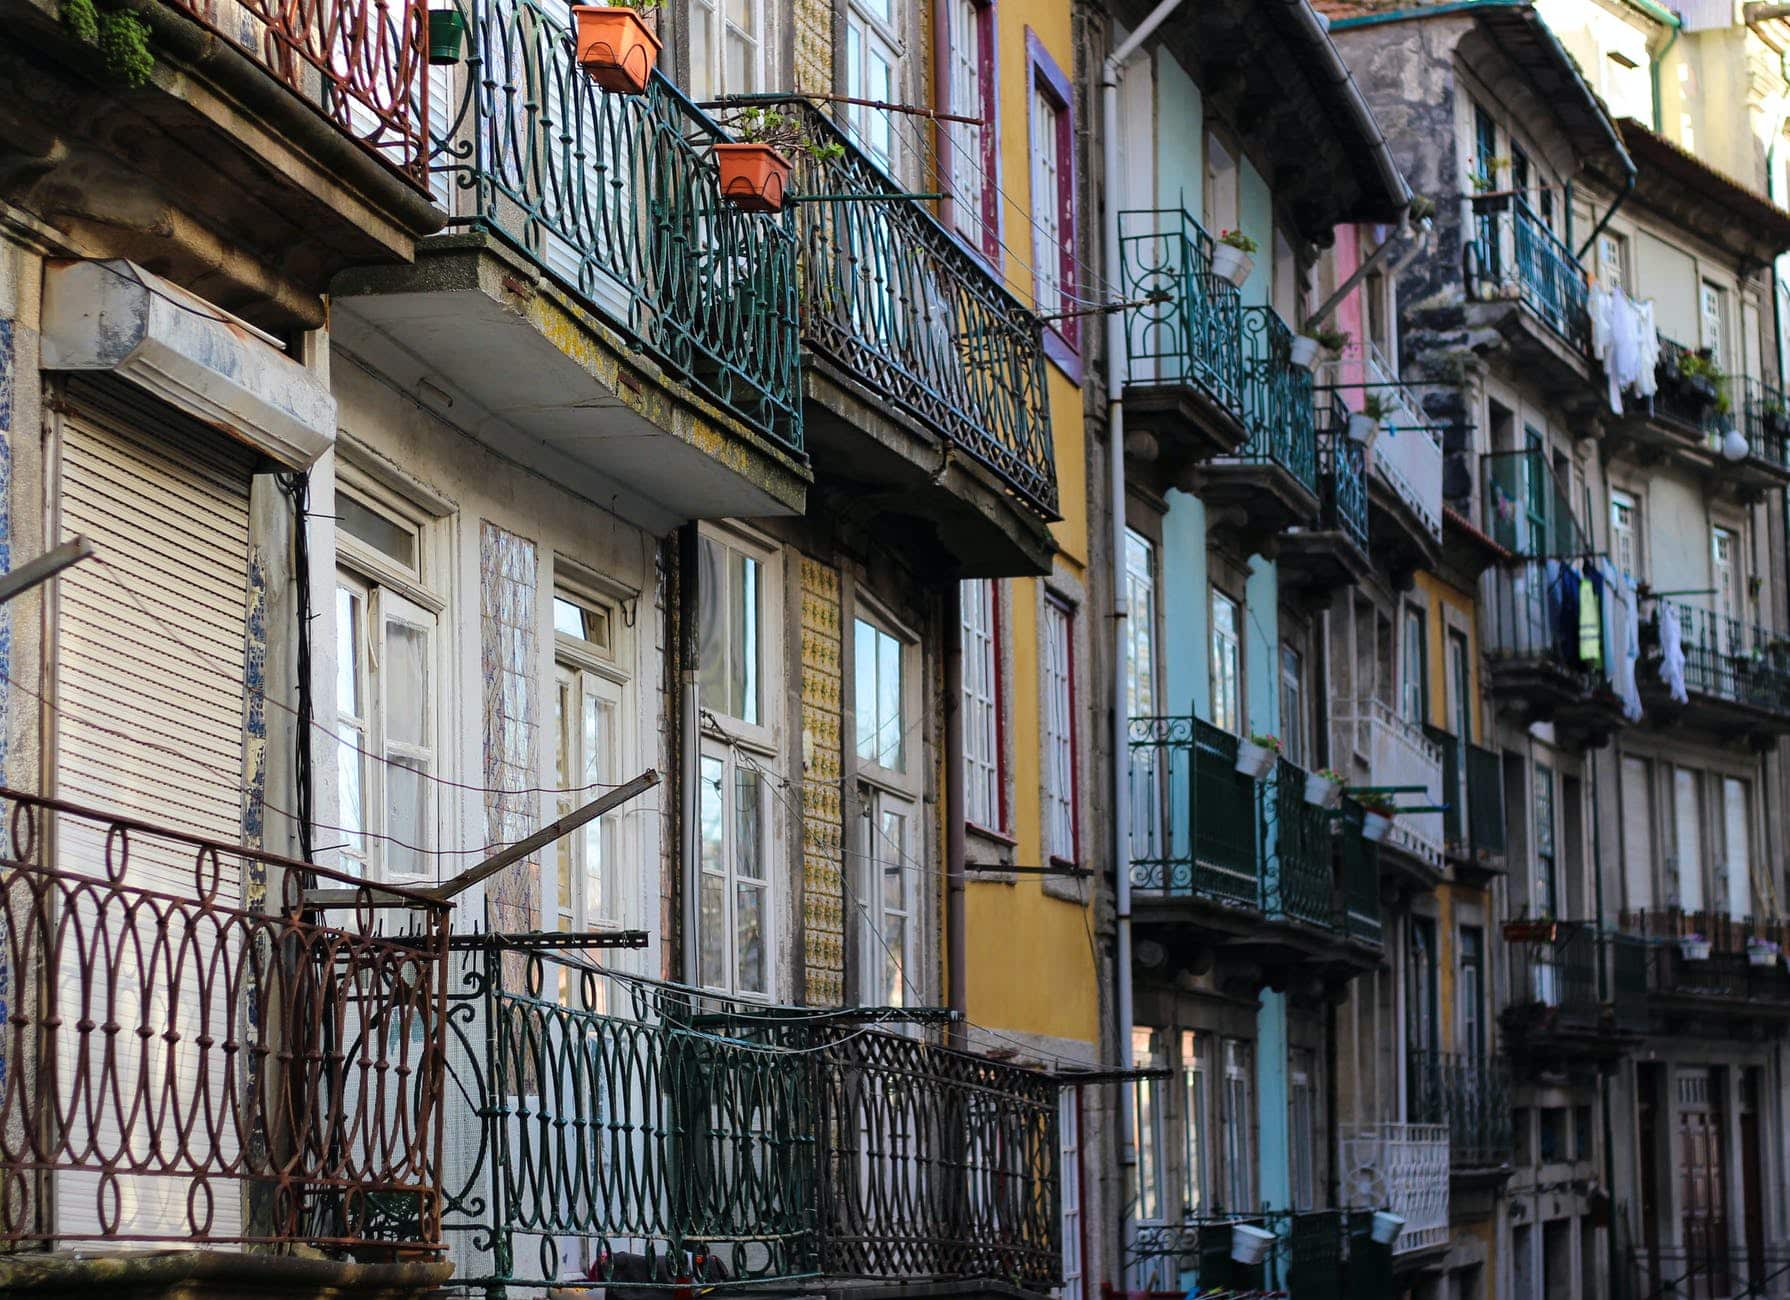 Alugar Imóvel em Portugal: 8 Dicas Infalíveis